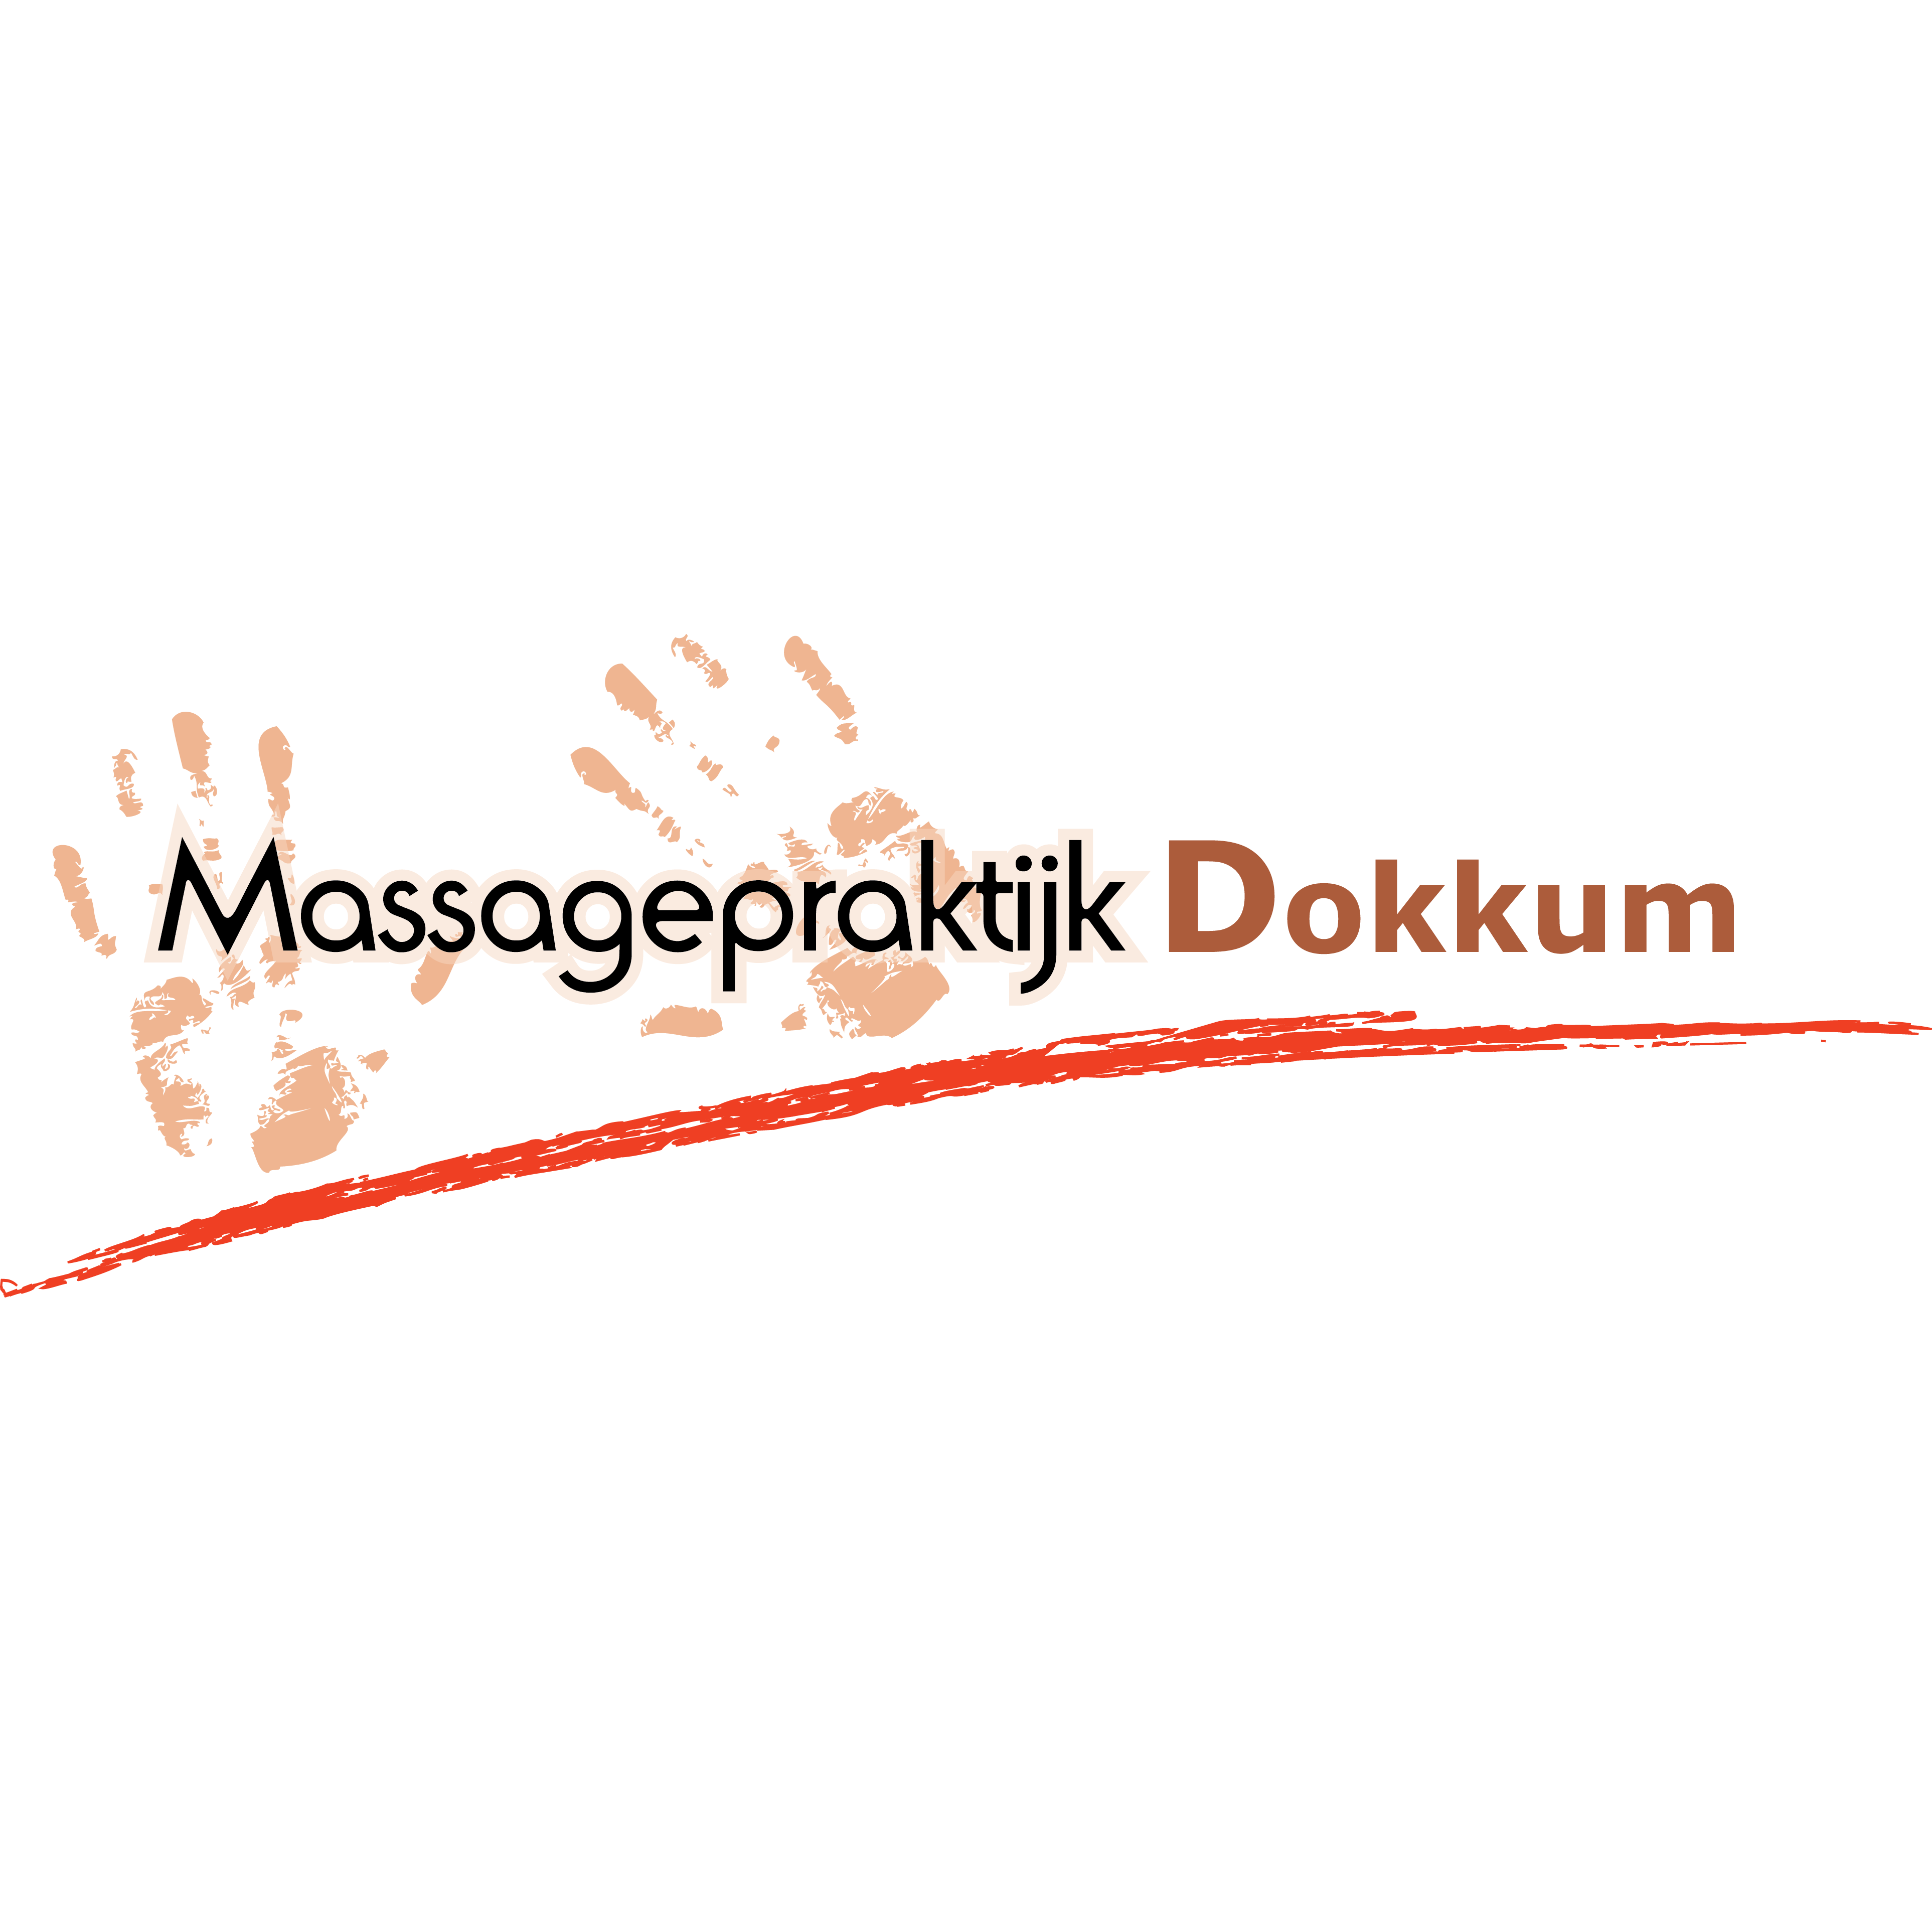 Massagepraktijk Dokkum Logo